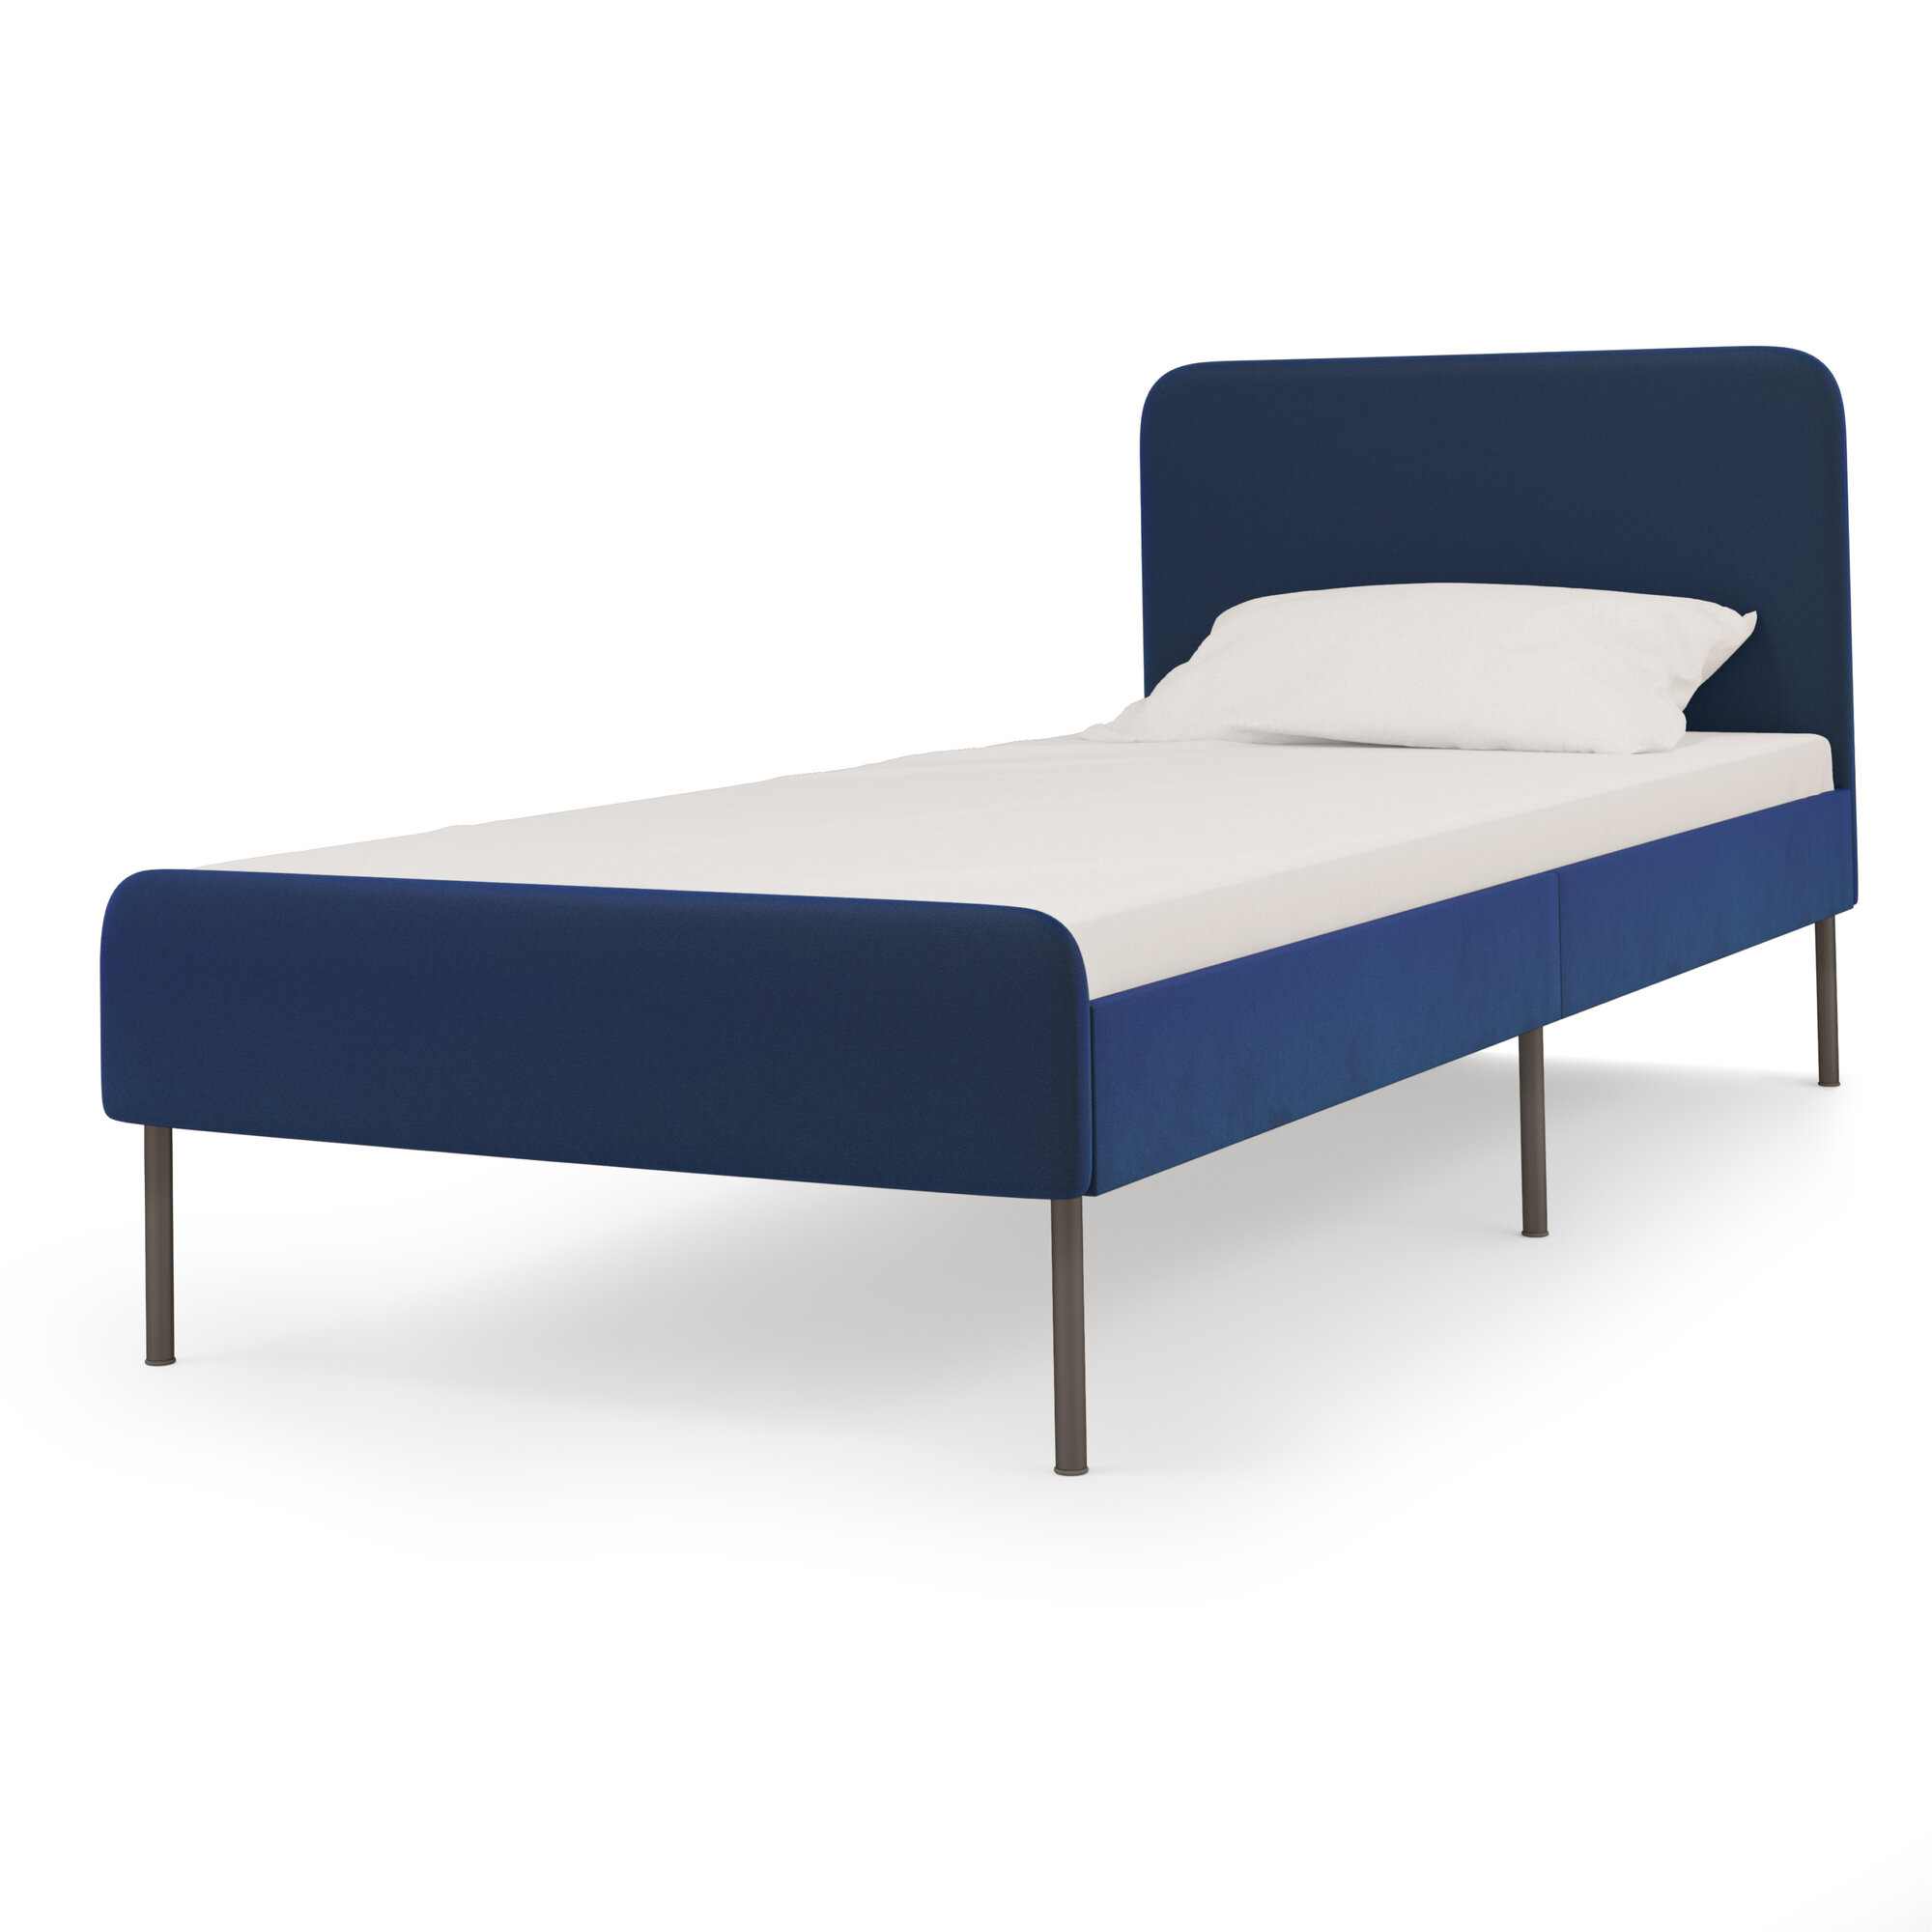 Каркас кровати Pragma Selenga с реечным основанием, спальное место 90х200 см, размер 94х206 см, обивка: велюр, темно-синий